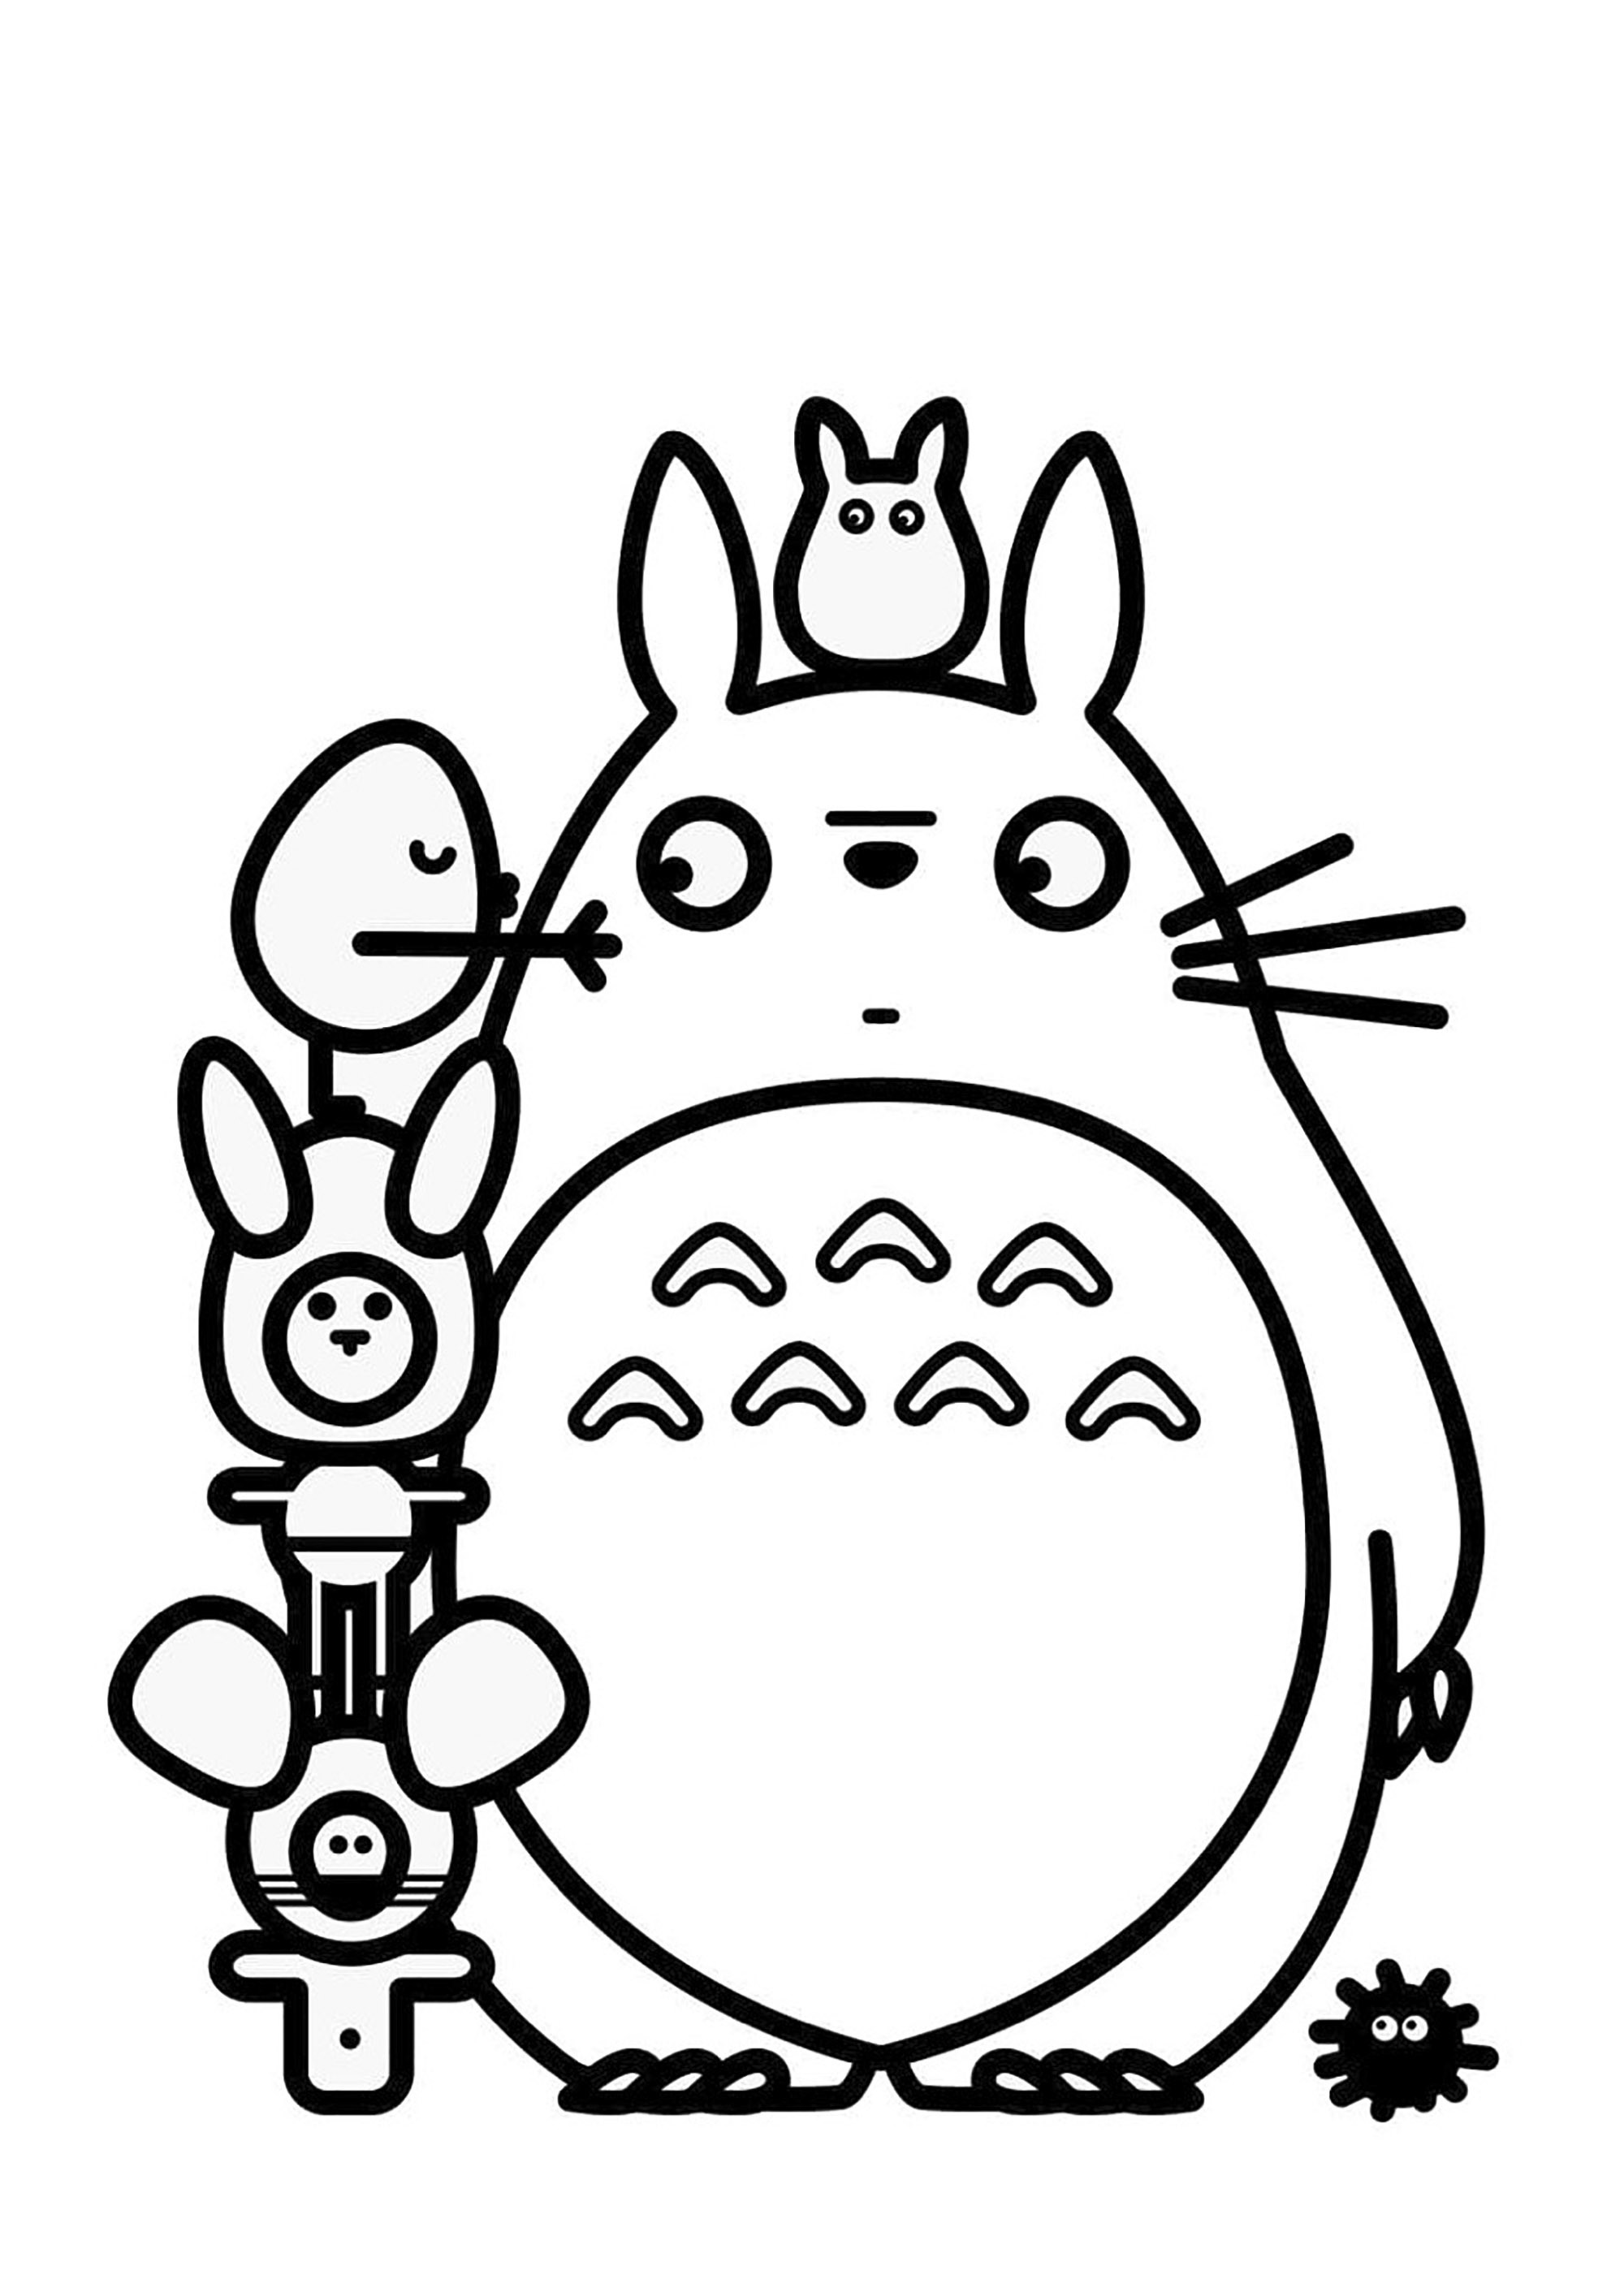 Páginas para colorear de Totoro con trazo grueso. Totoro es un personaje de ficción creado en 1988 por Hayao Miyazaki de Studio Ghibli para la película Mi vecino Totoro.